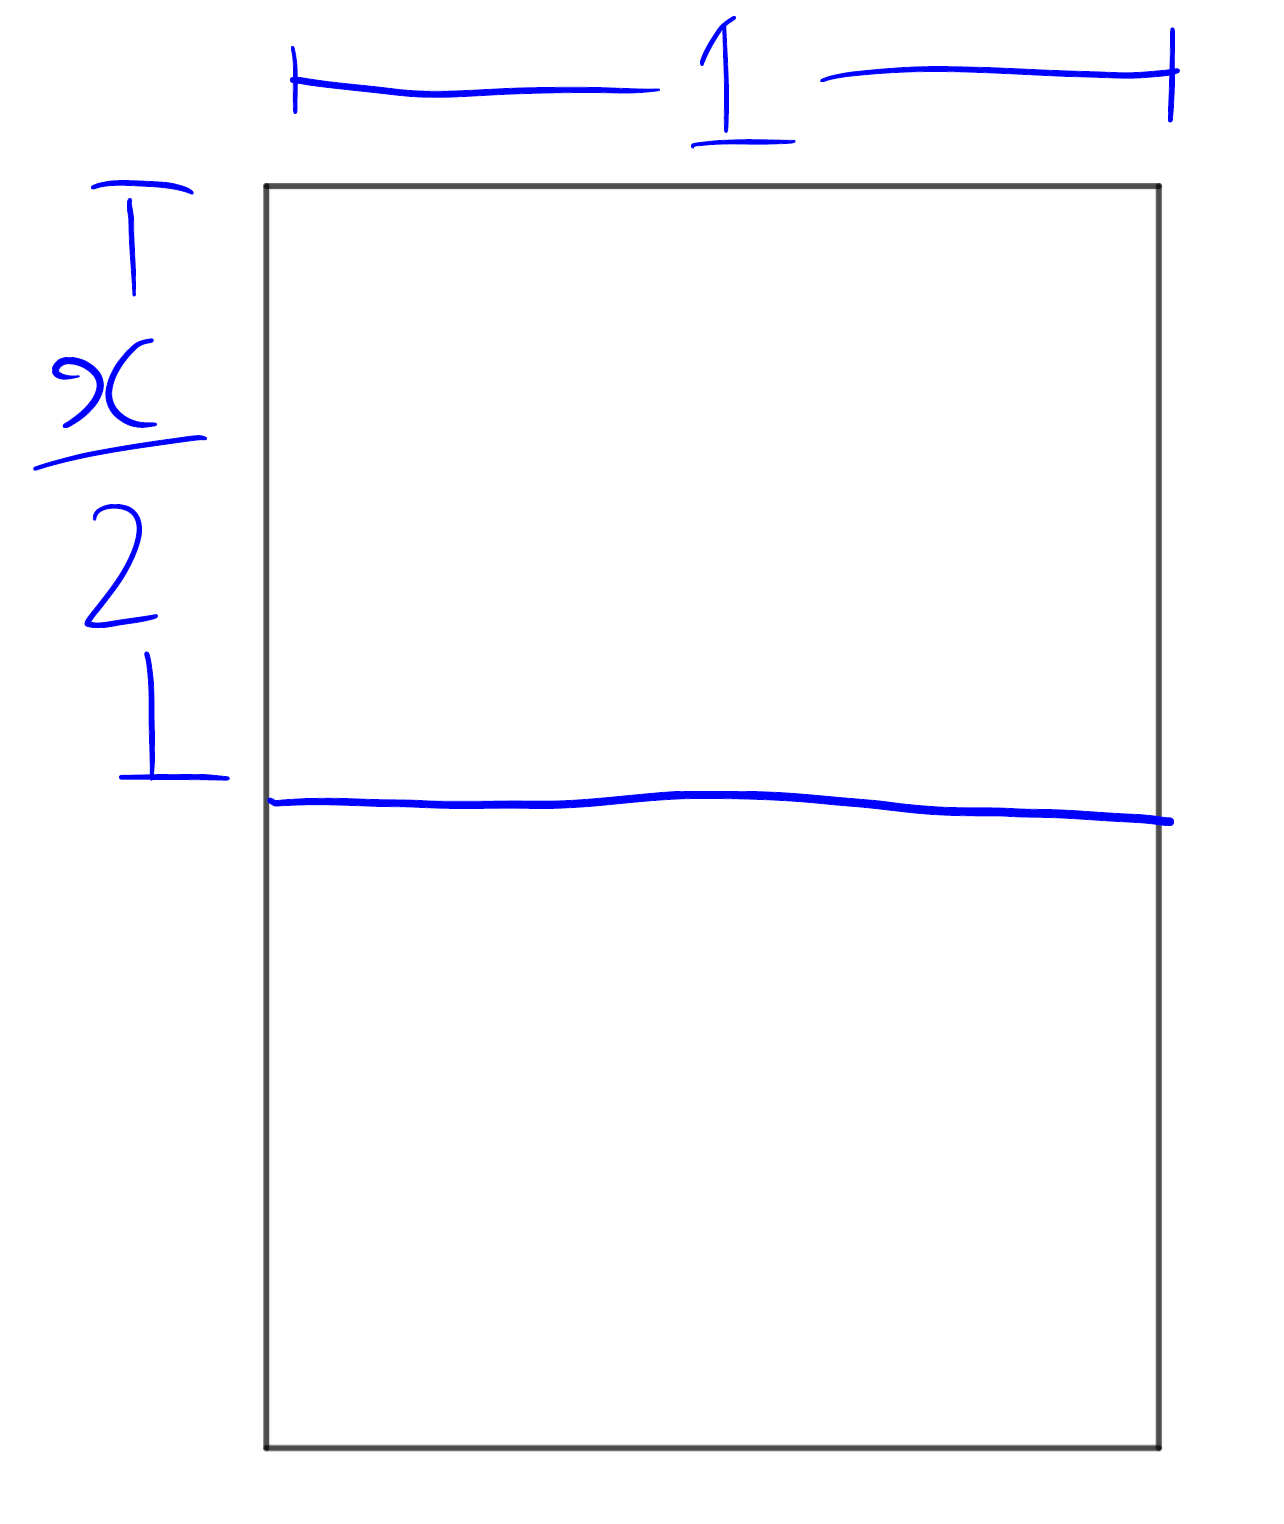 Прямоугольный лист разделён пополам так, что новый прямоугольник имеет отношение сторон x/2 к 1